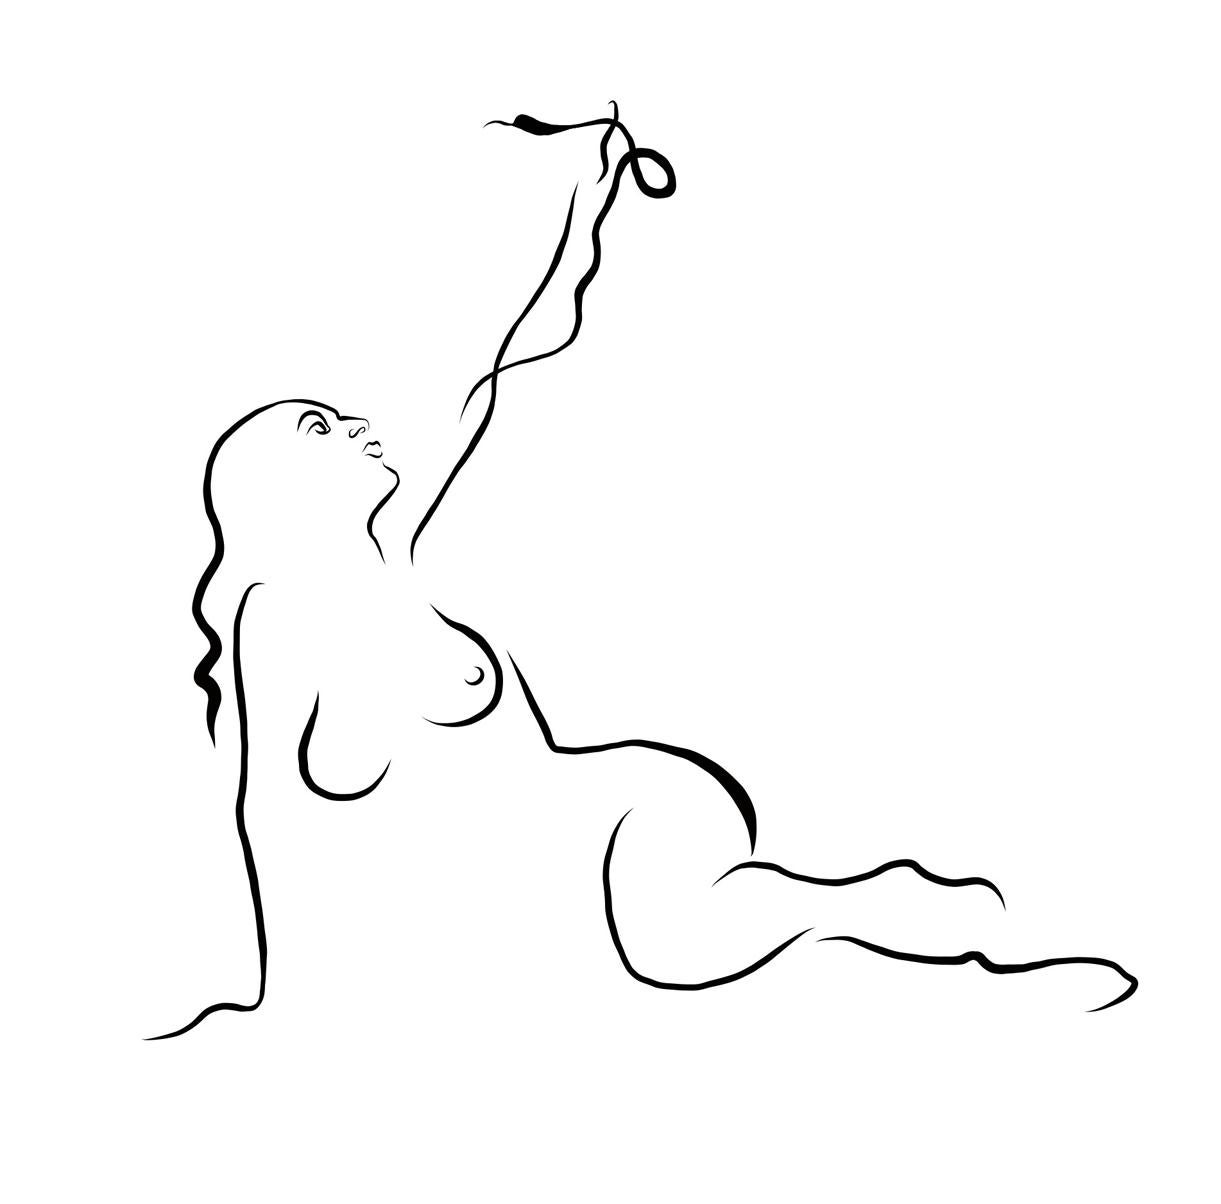 Michael Binkley Nude Print - Haiku #6, 1/50 - Digital Vector B&W Drawing Female Nude Woman Figure with Snake